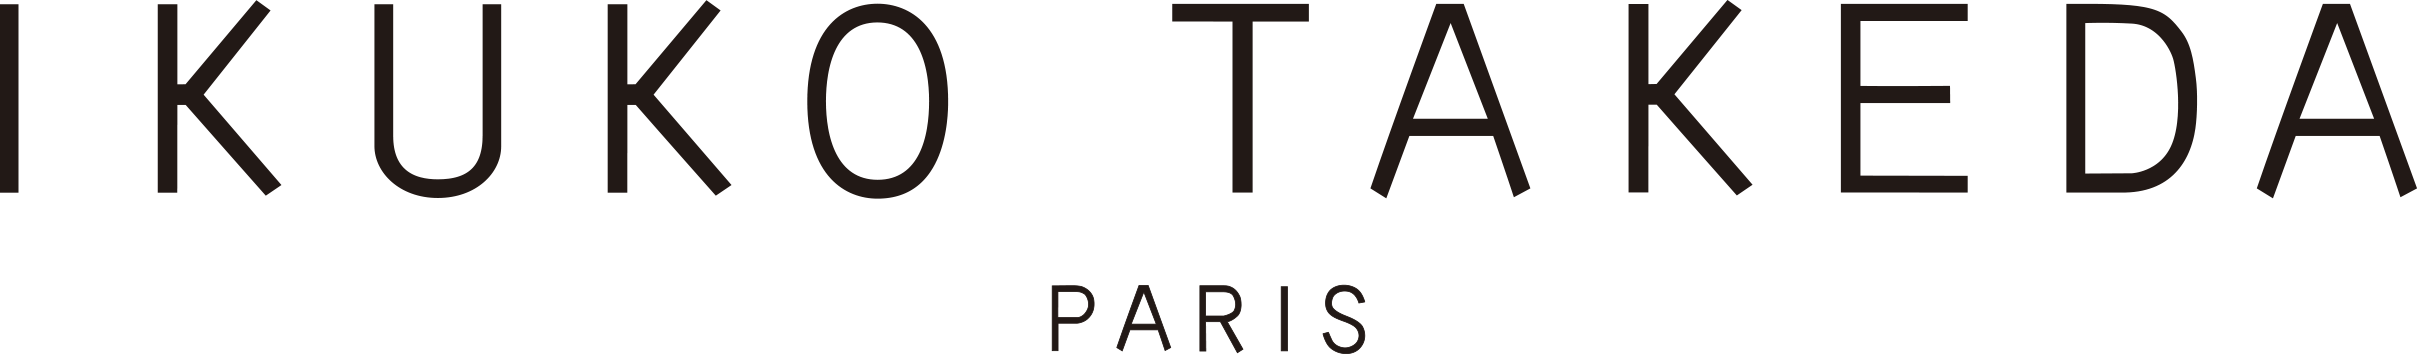 logo-ikuko-takeda-paris